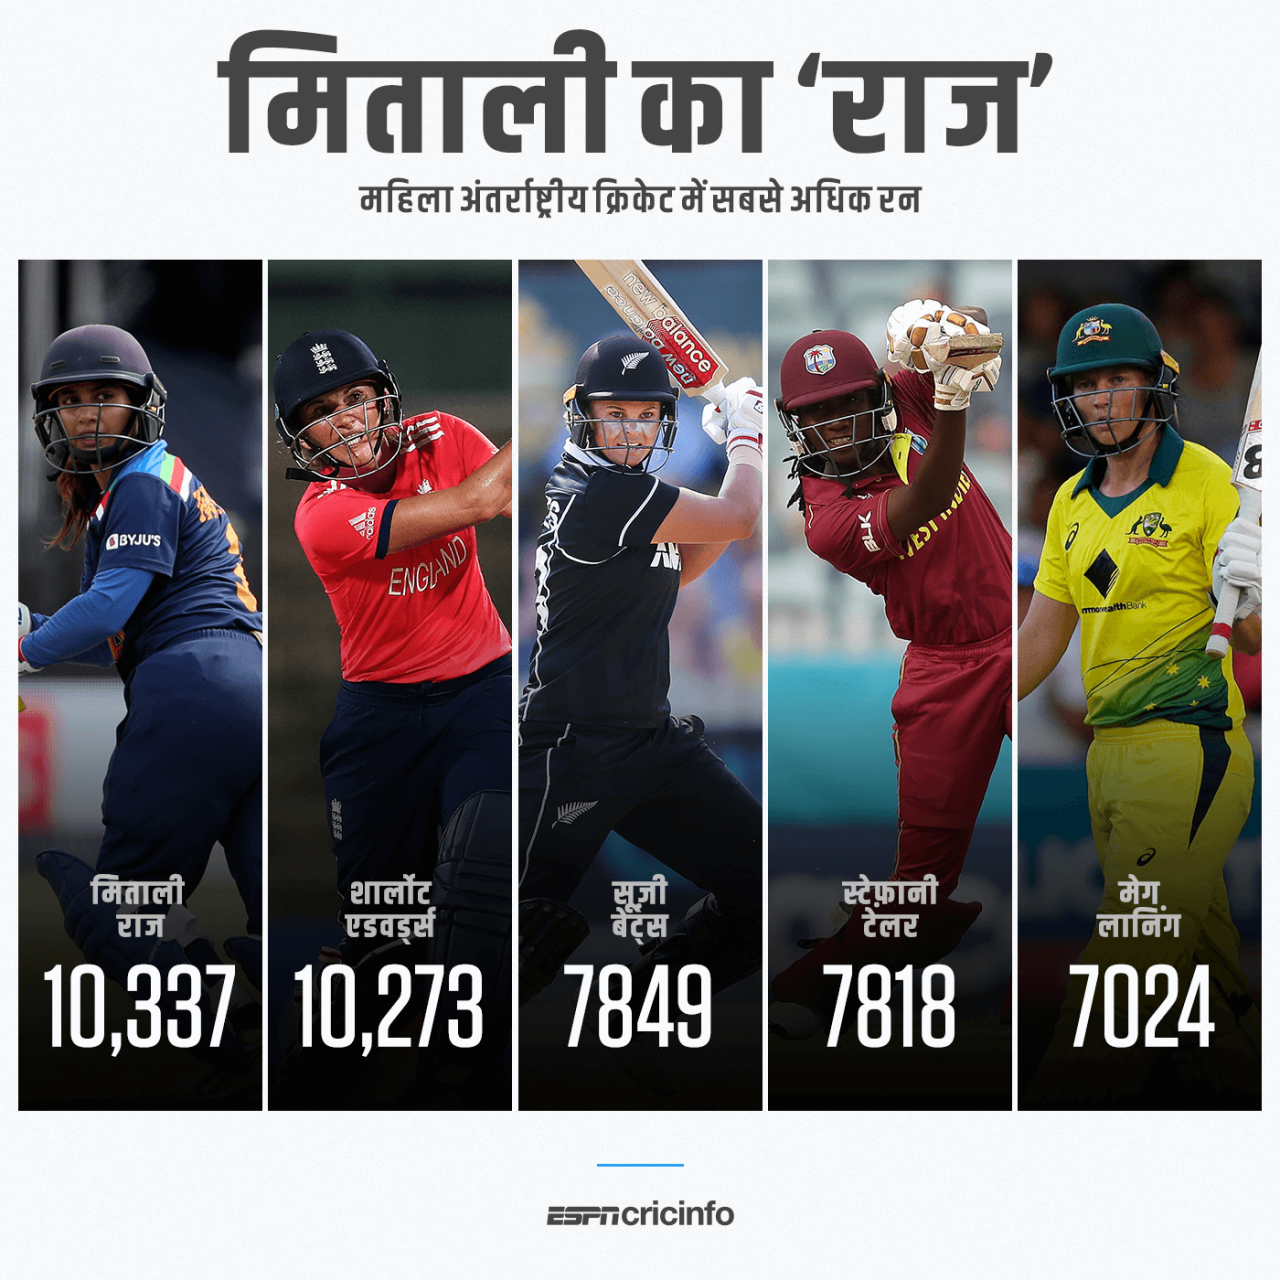 महिला क्रिकेट में सबसे अधिक रन बनाने वाली बल्लेबाज़ बनीं मिताली राज